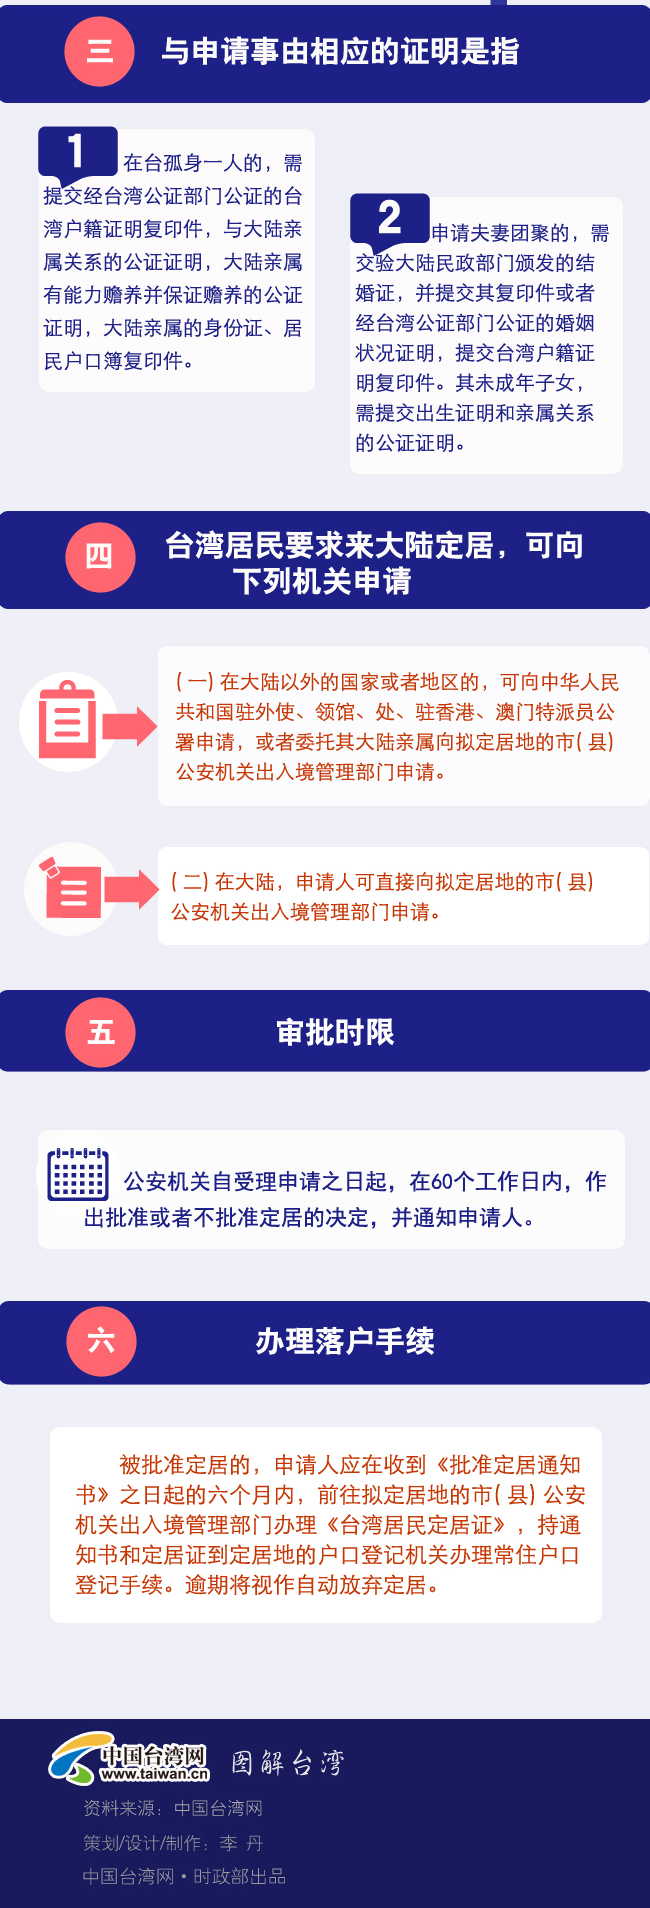 一图了解台湾居民如何合法取得大陆身份